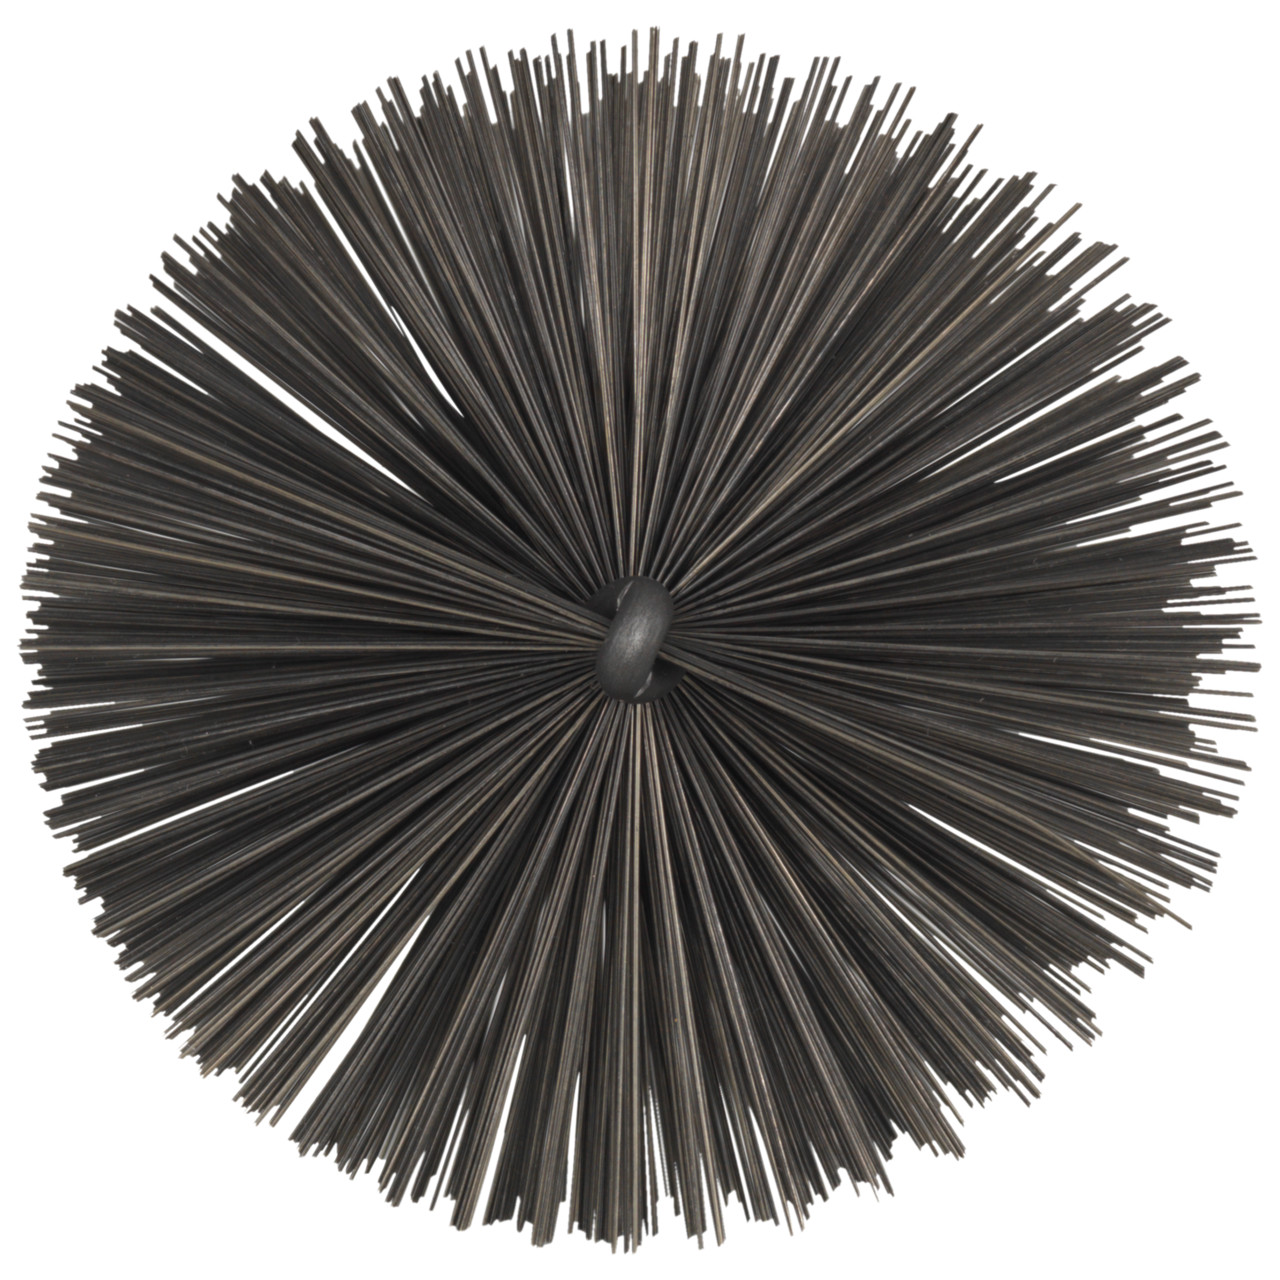 Tyrolit Brosse tubulaire avec filetage extérieur DxGE-I 101xW1/2-160 Pour l'acier, forme : 18ROGDG - (brosse tubulaire), art. 34203608